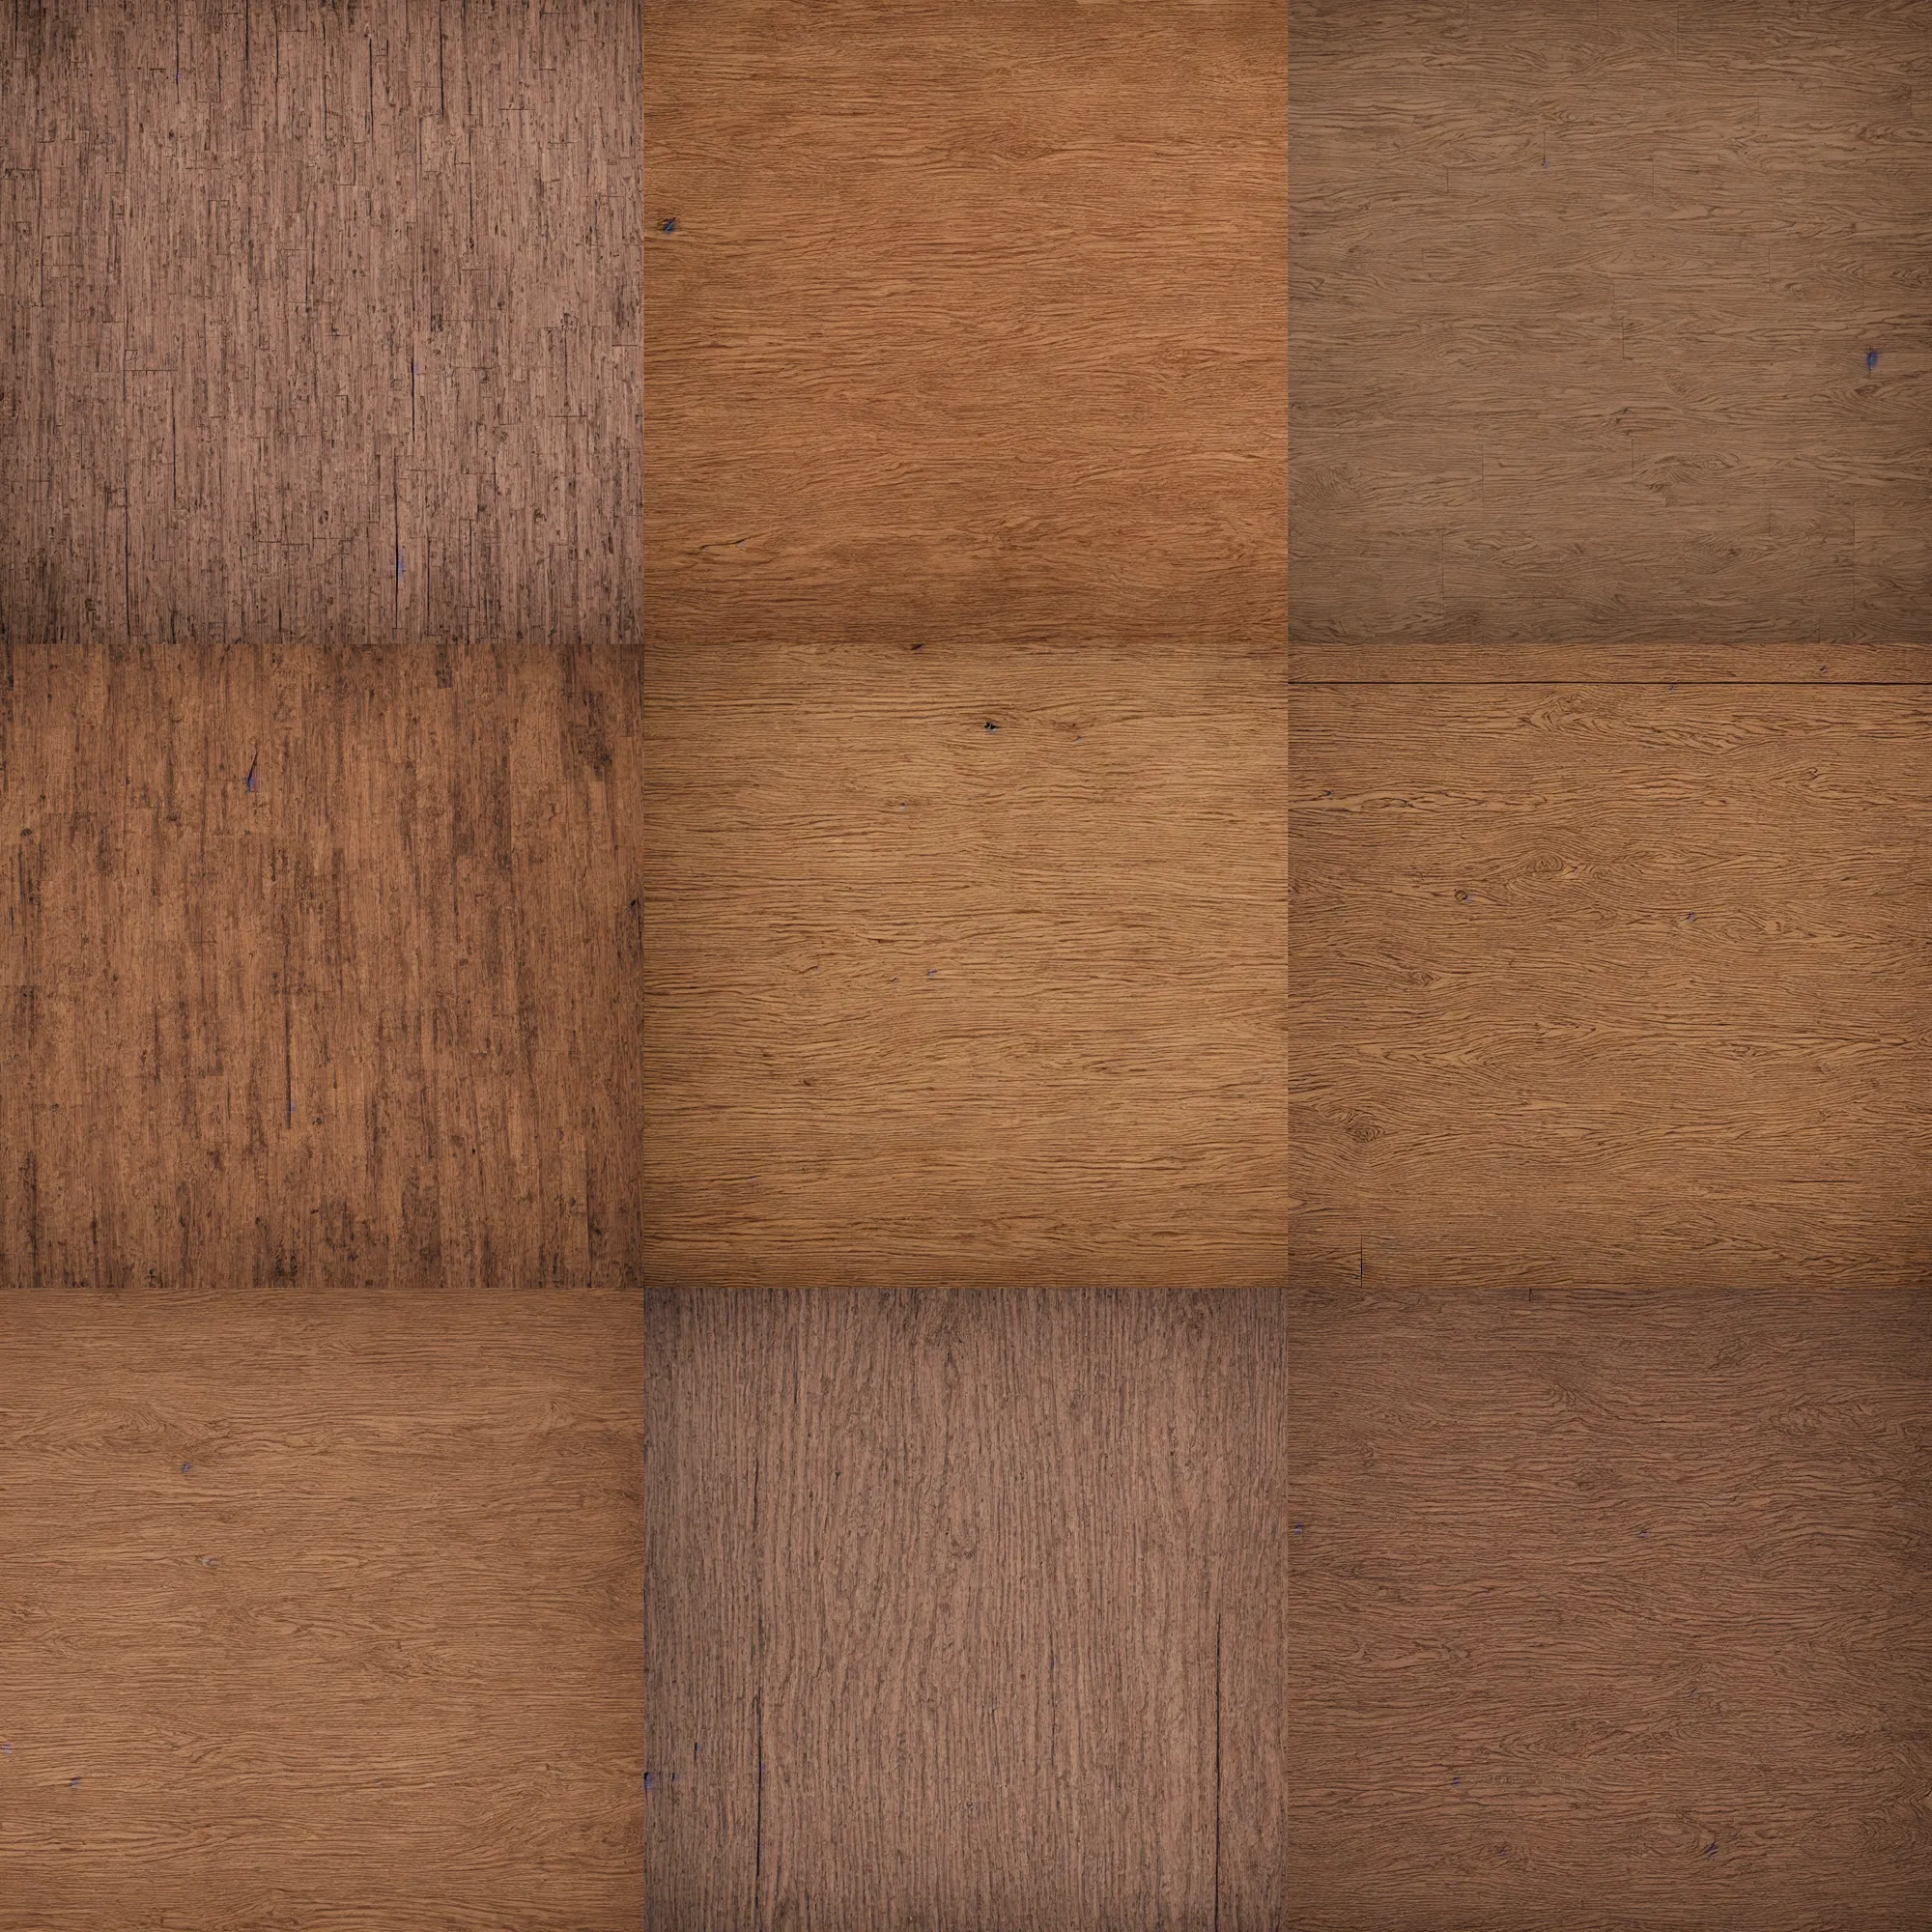 Prompt: wooden floor texture